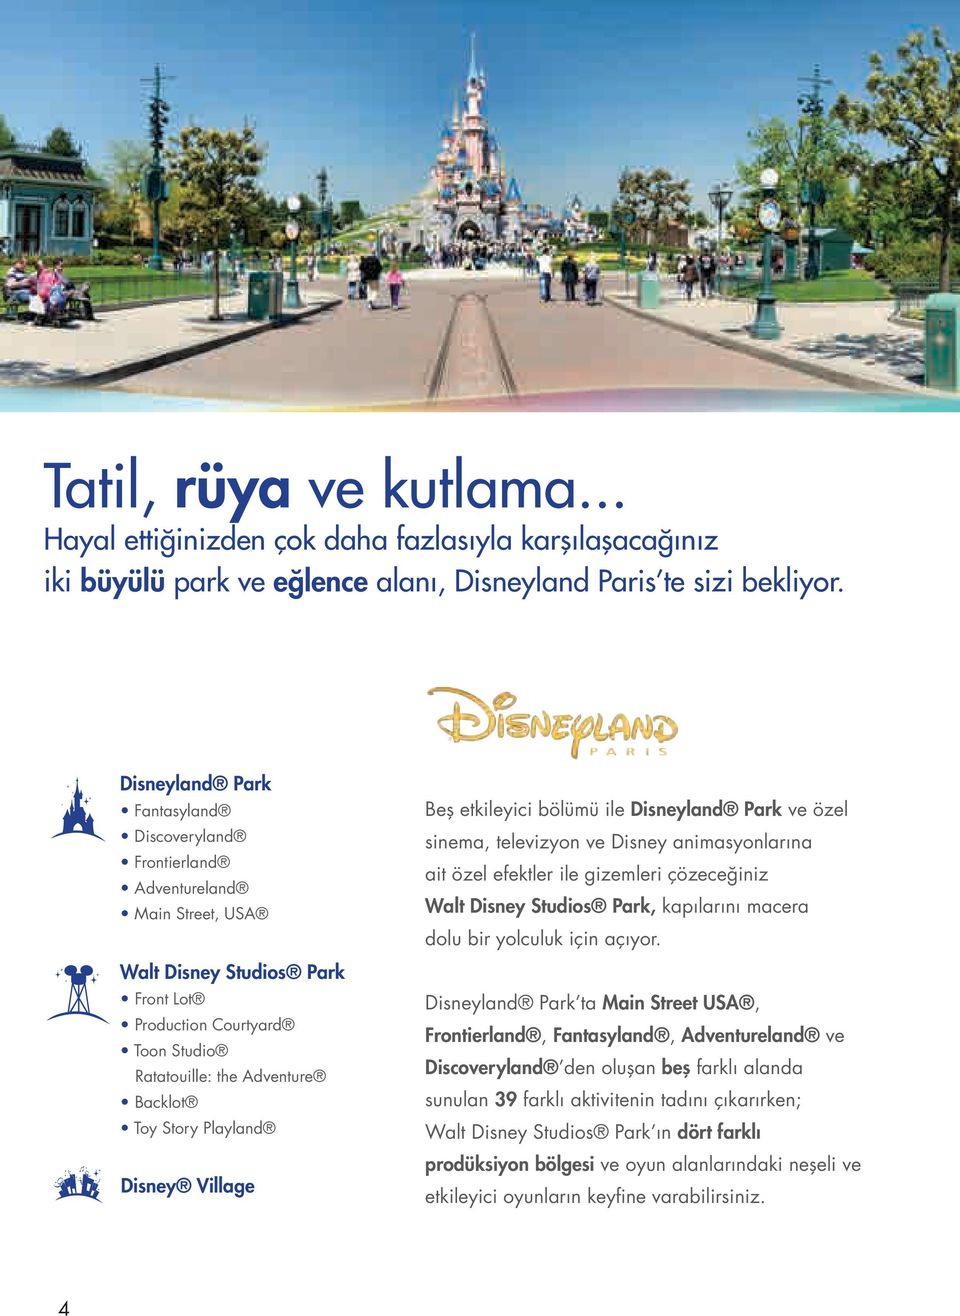 Playland Disney Village Beş etkileyici bölümü ile Disneyland Park ve özel sinema, televizyon ve Disney animasyonlarına ait özel efektler ile gizemleri çözeceğiniz Walt Disney Studios Park, kapılarını